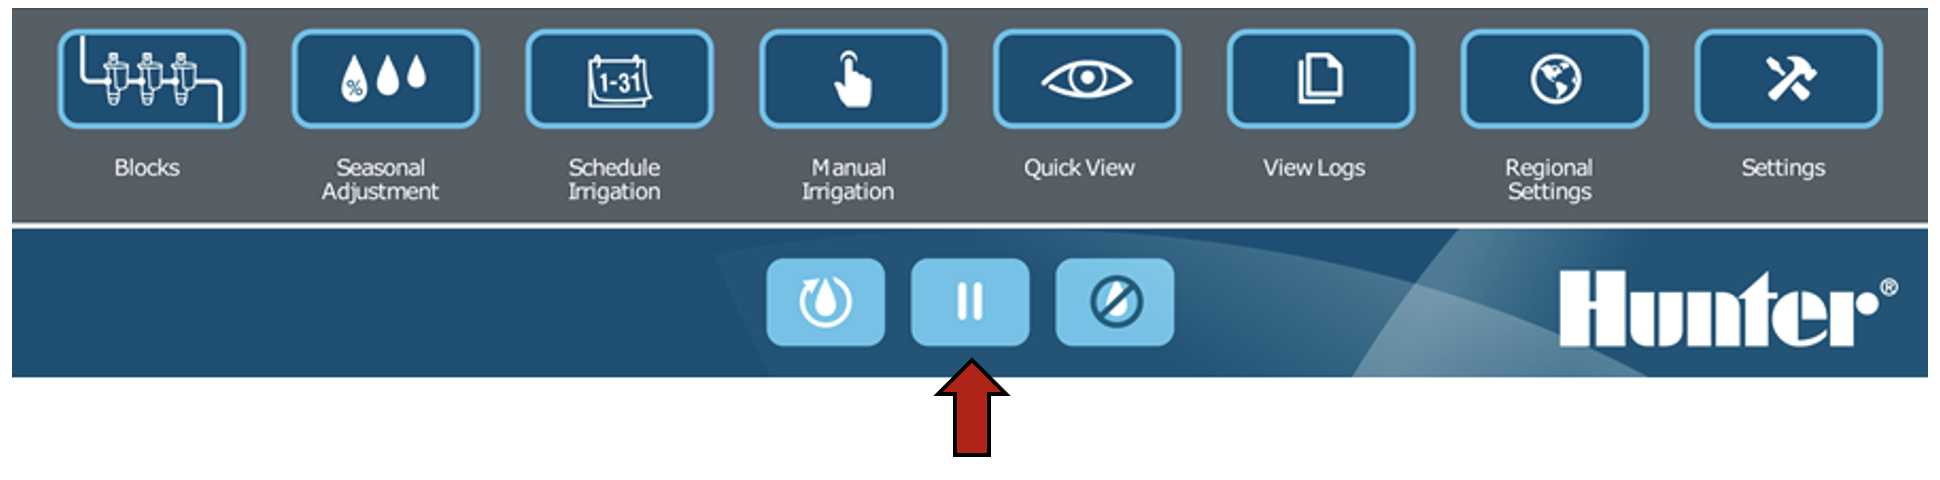 Image de l'interface mettant en évidence le bouton pause.